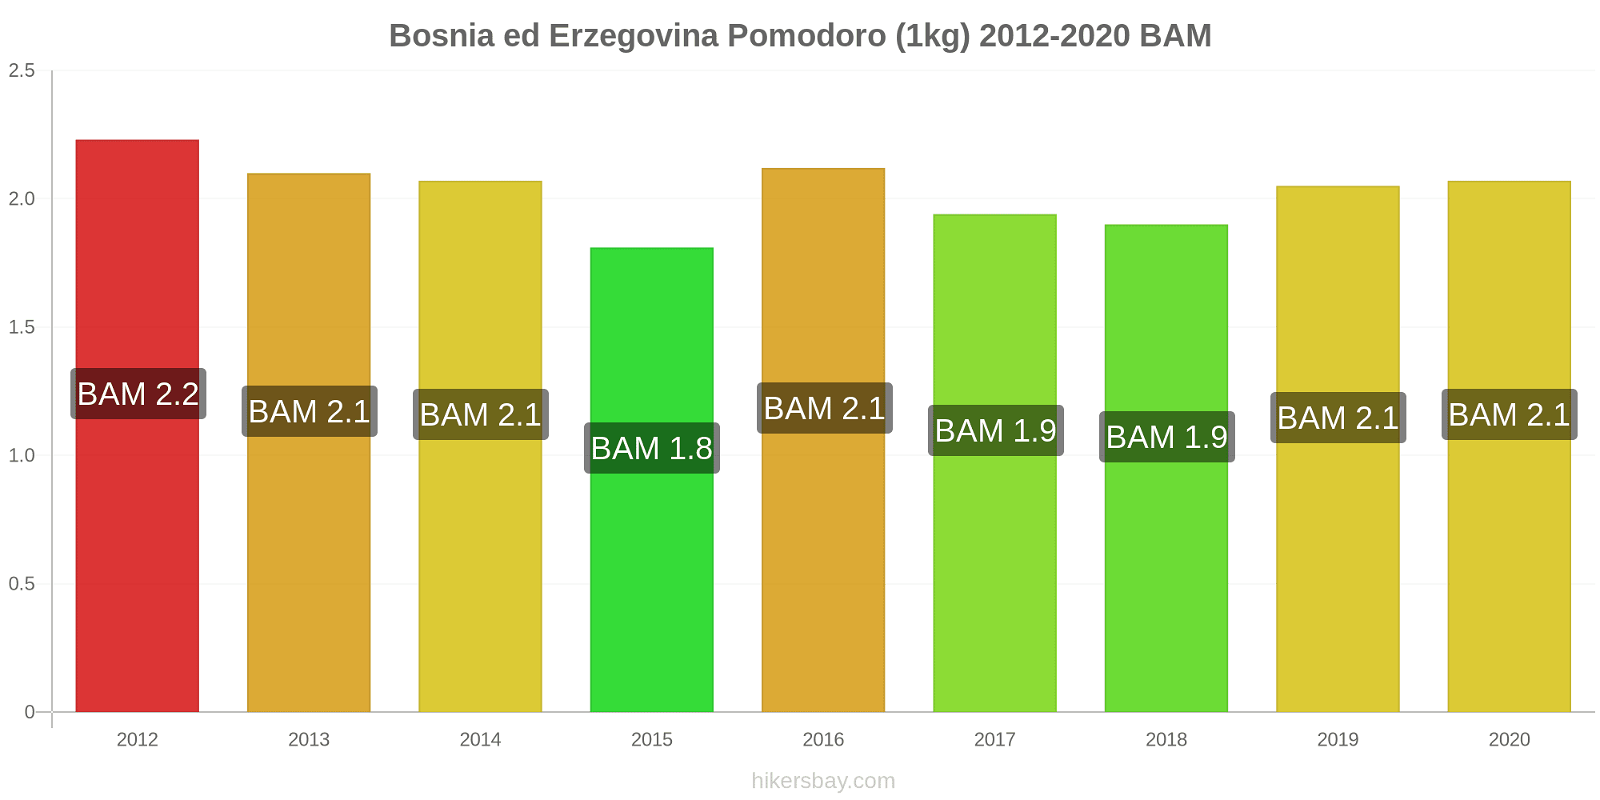 Bosnia ed Erzegovina variazioni di prezzo Pomodoro (1kg) hikersbay.com